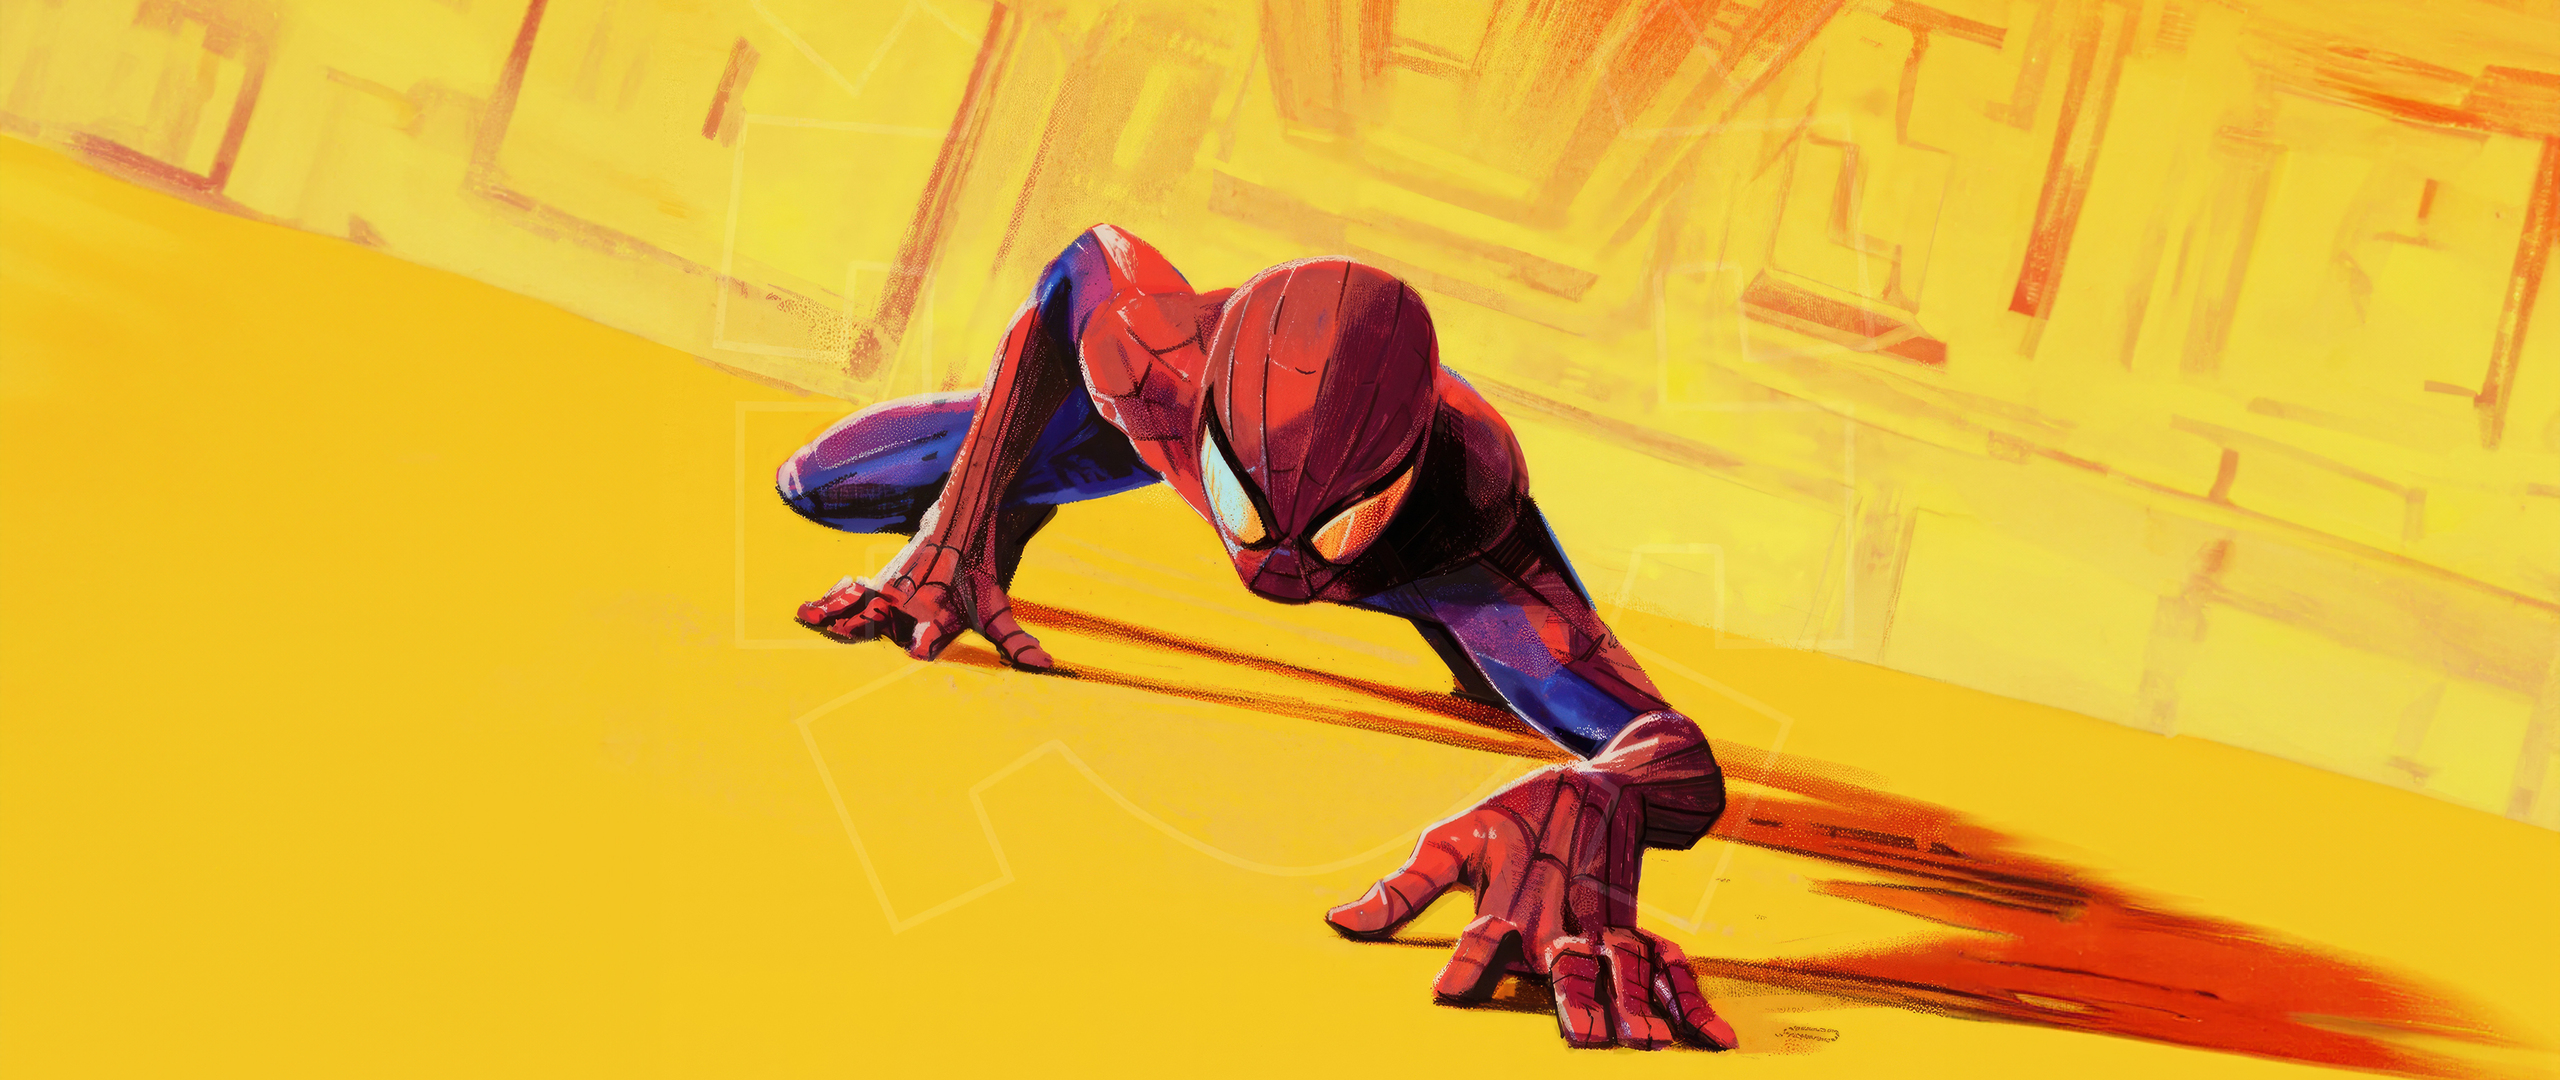 Spider Man Striking Cityscape Wallpaper In 2560x1080 Resolution